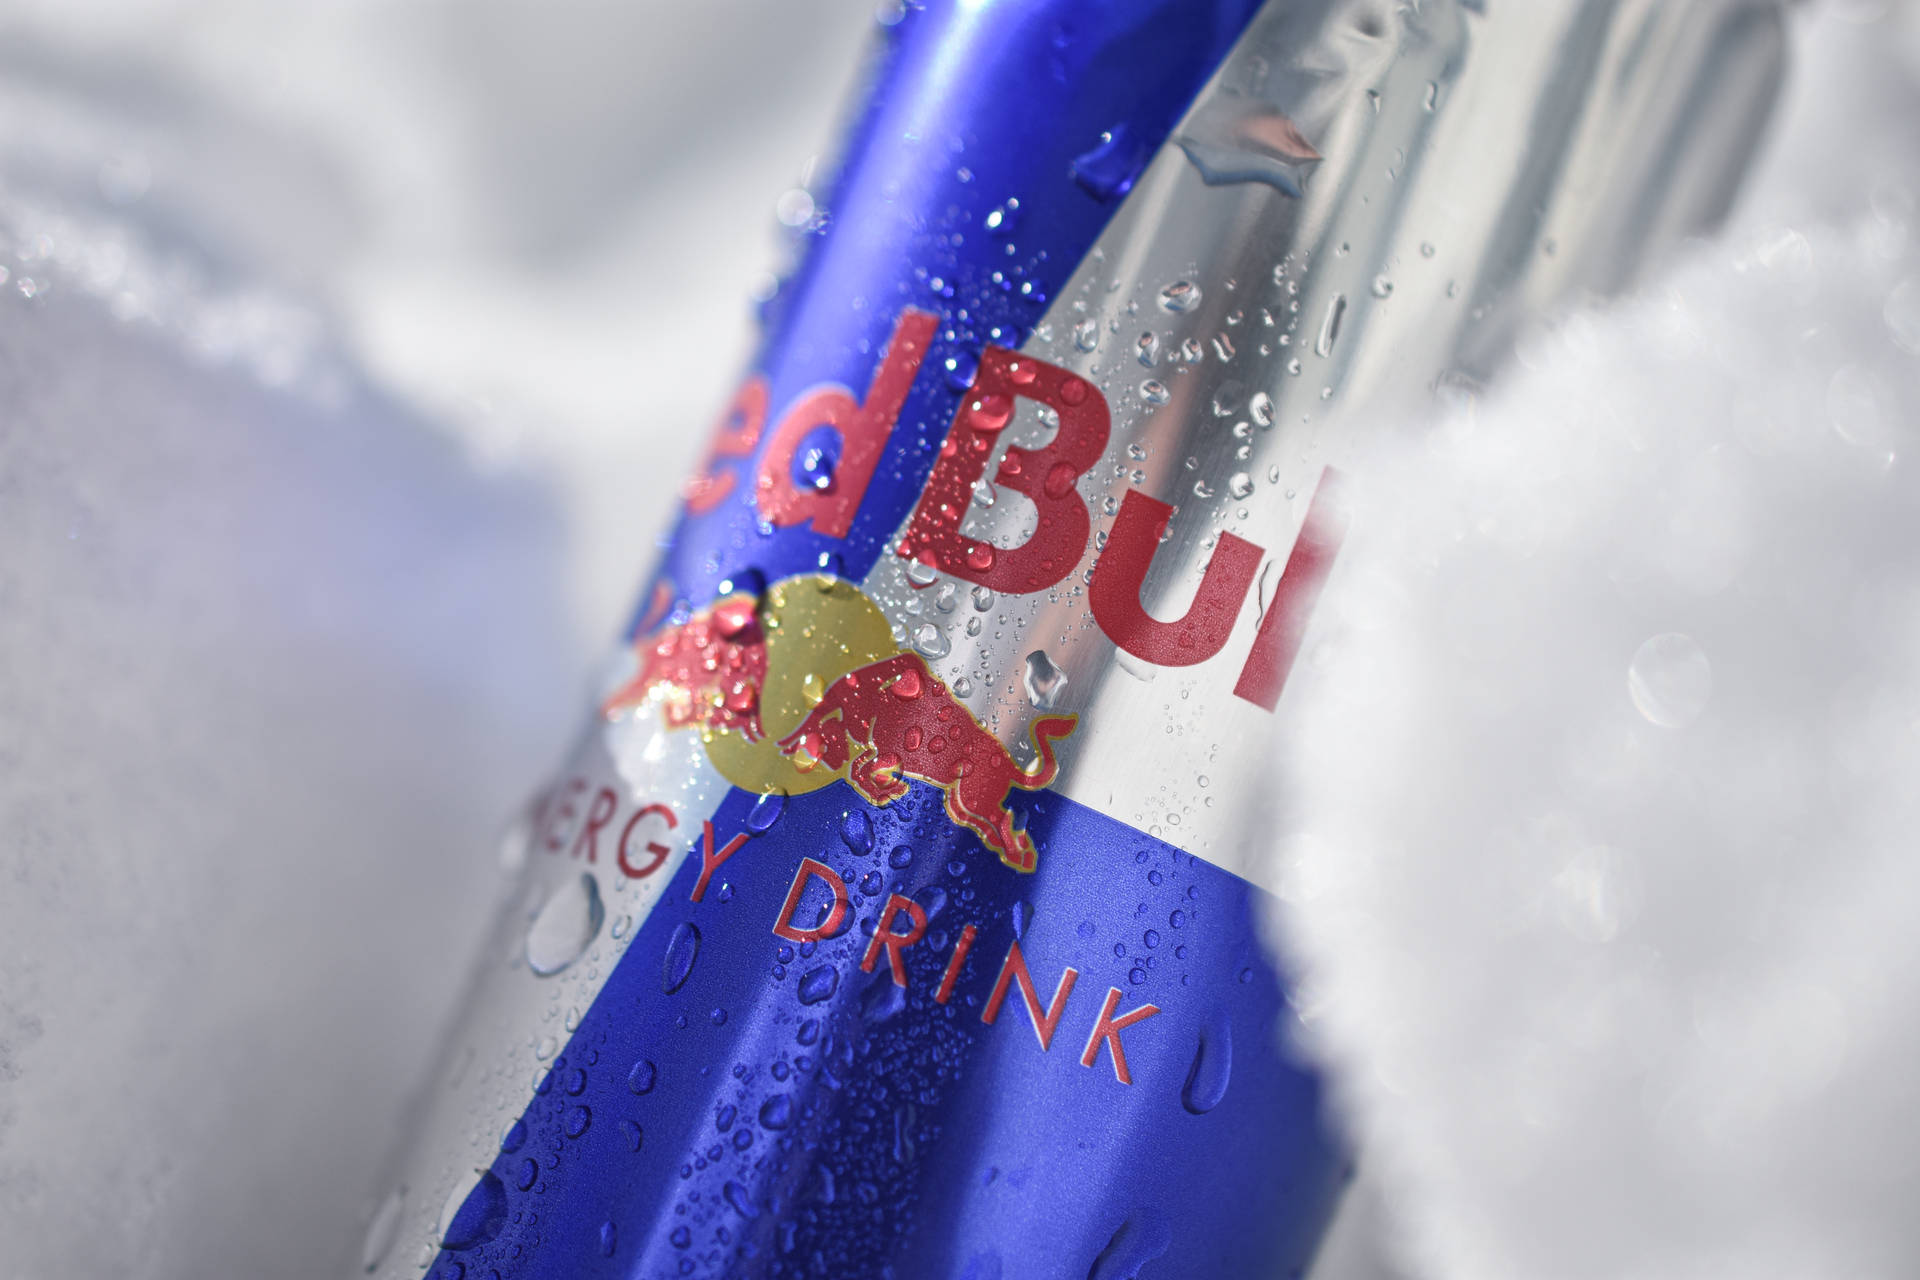 Red Bull Can Snow Macro Wallpaper